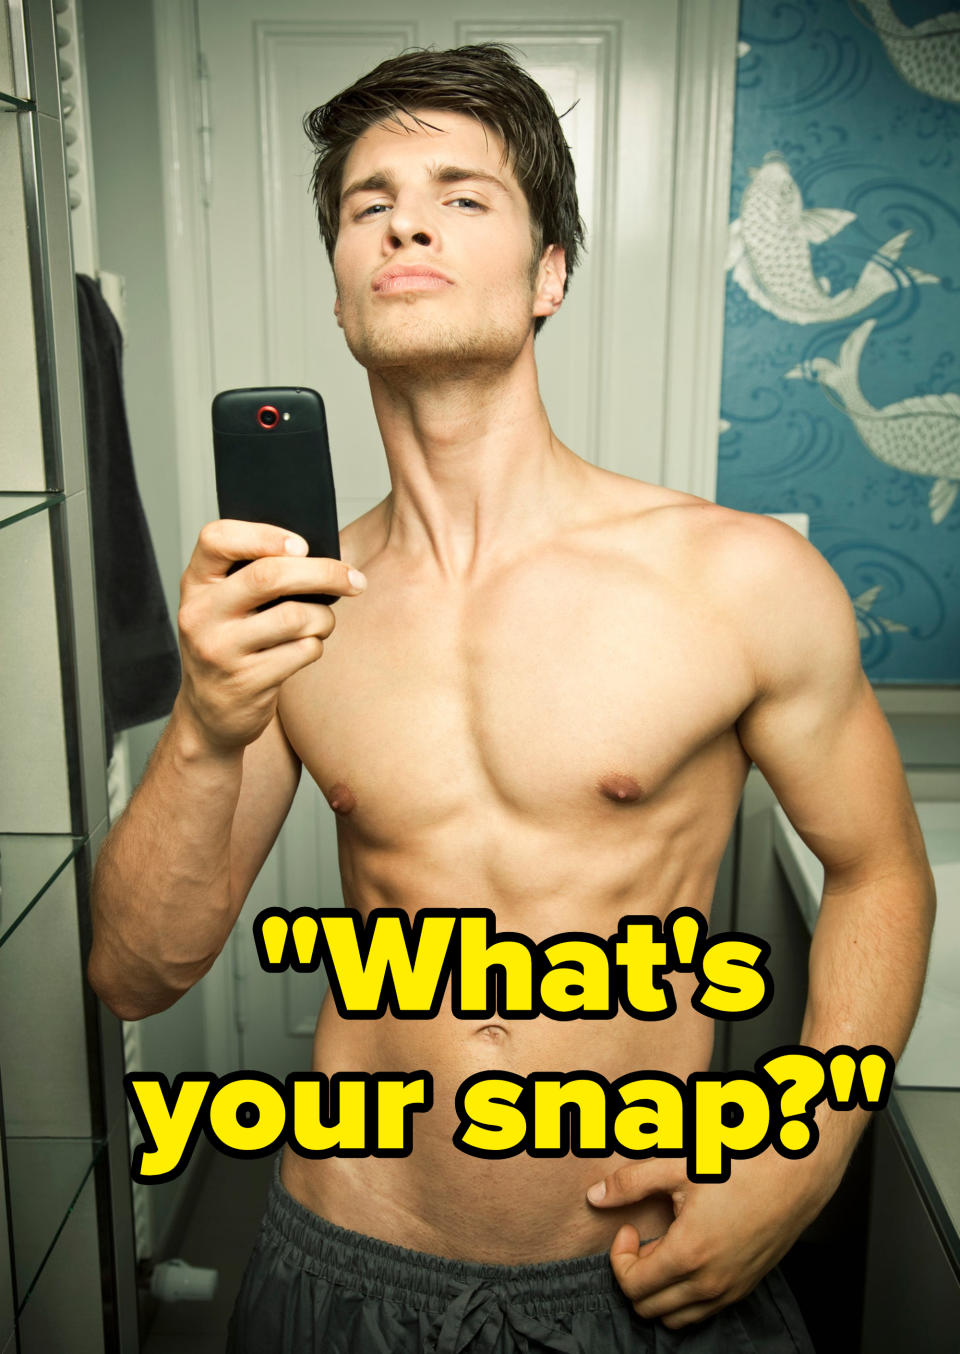 A shirtless man taking a selfie